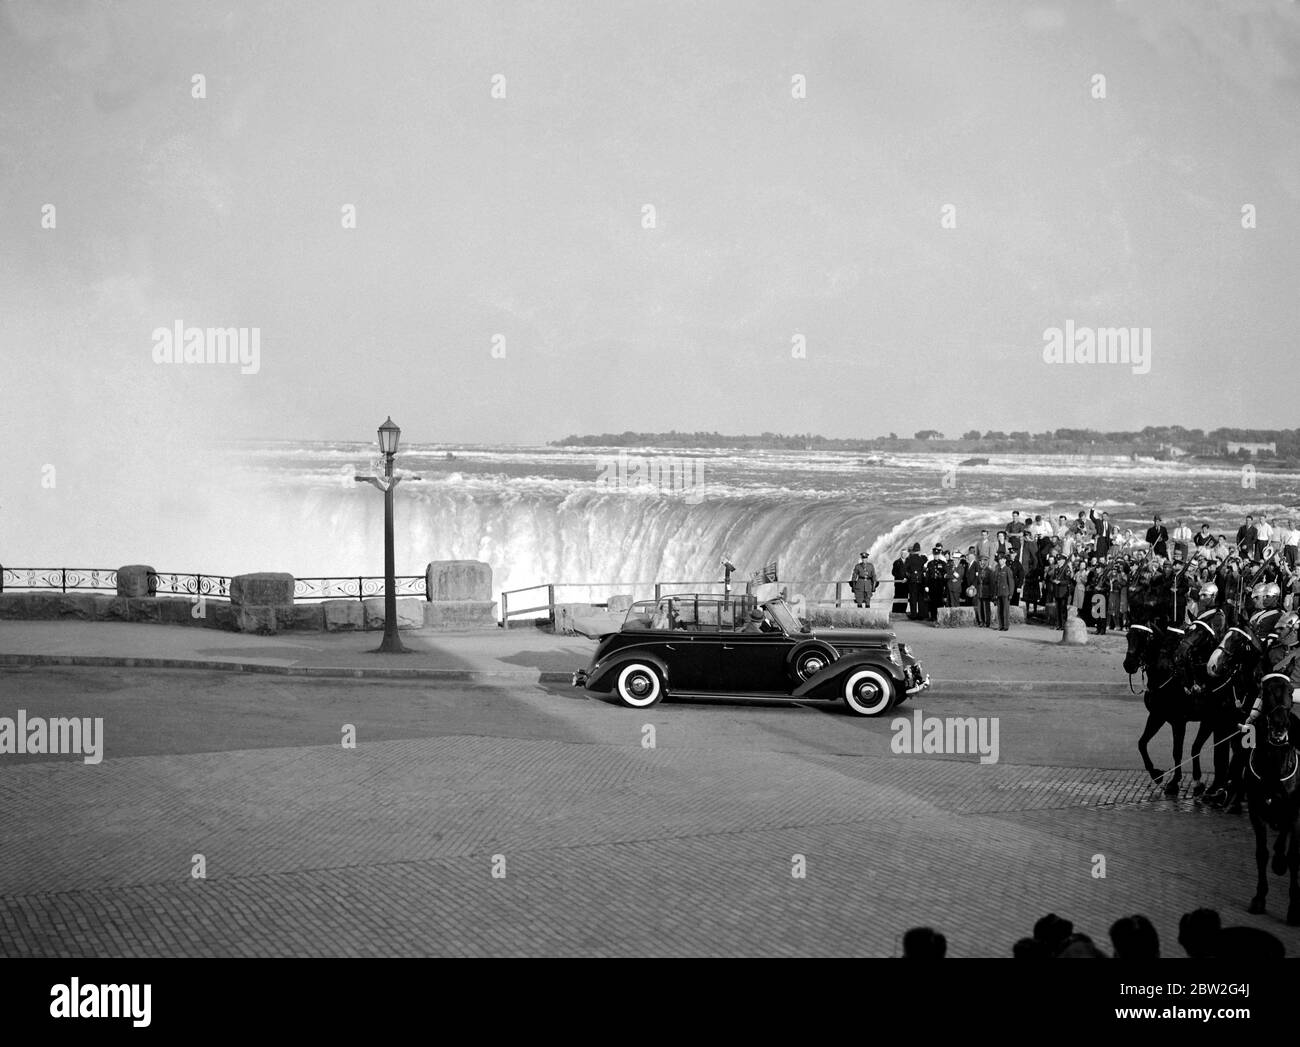 Die Königliche Tour durch Kanada und die USA von König George VI. Und Königin Elizabeth , 1939. Der König und die Königin besuchen die Niagara Fälle, Ontario, bevor sie in die Vereinigten Staaten fahren. Die königliche Party, die an den Horseshoe Falls vorbei fährt. Stockfoto